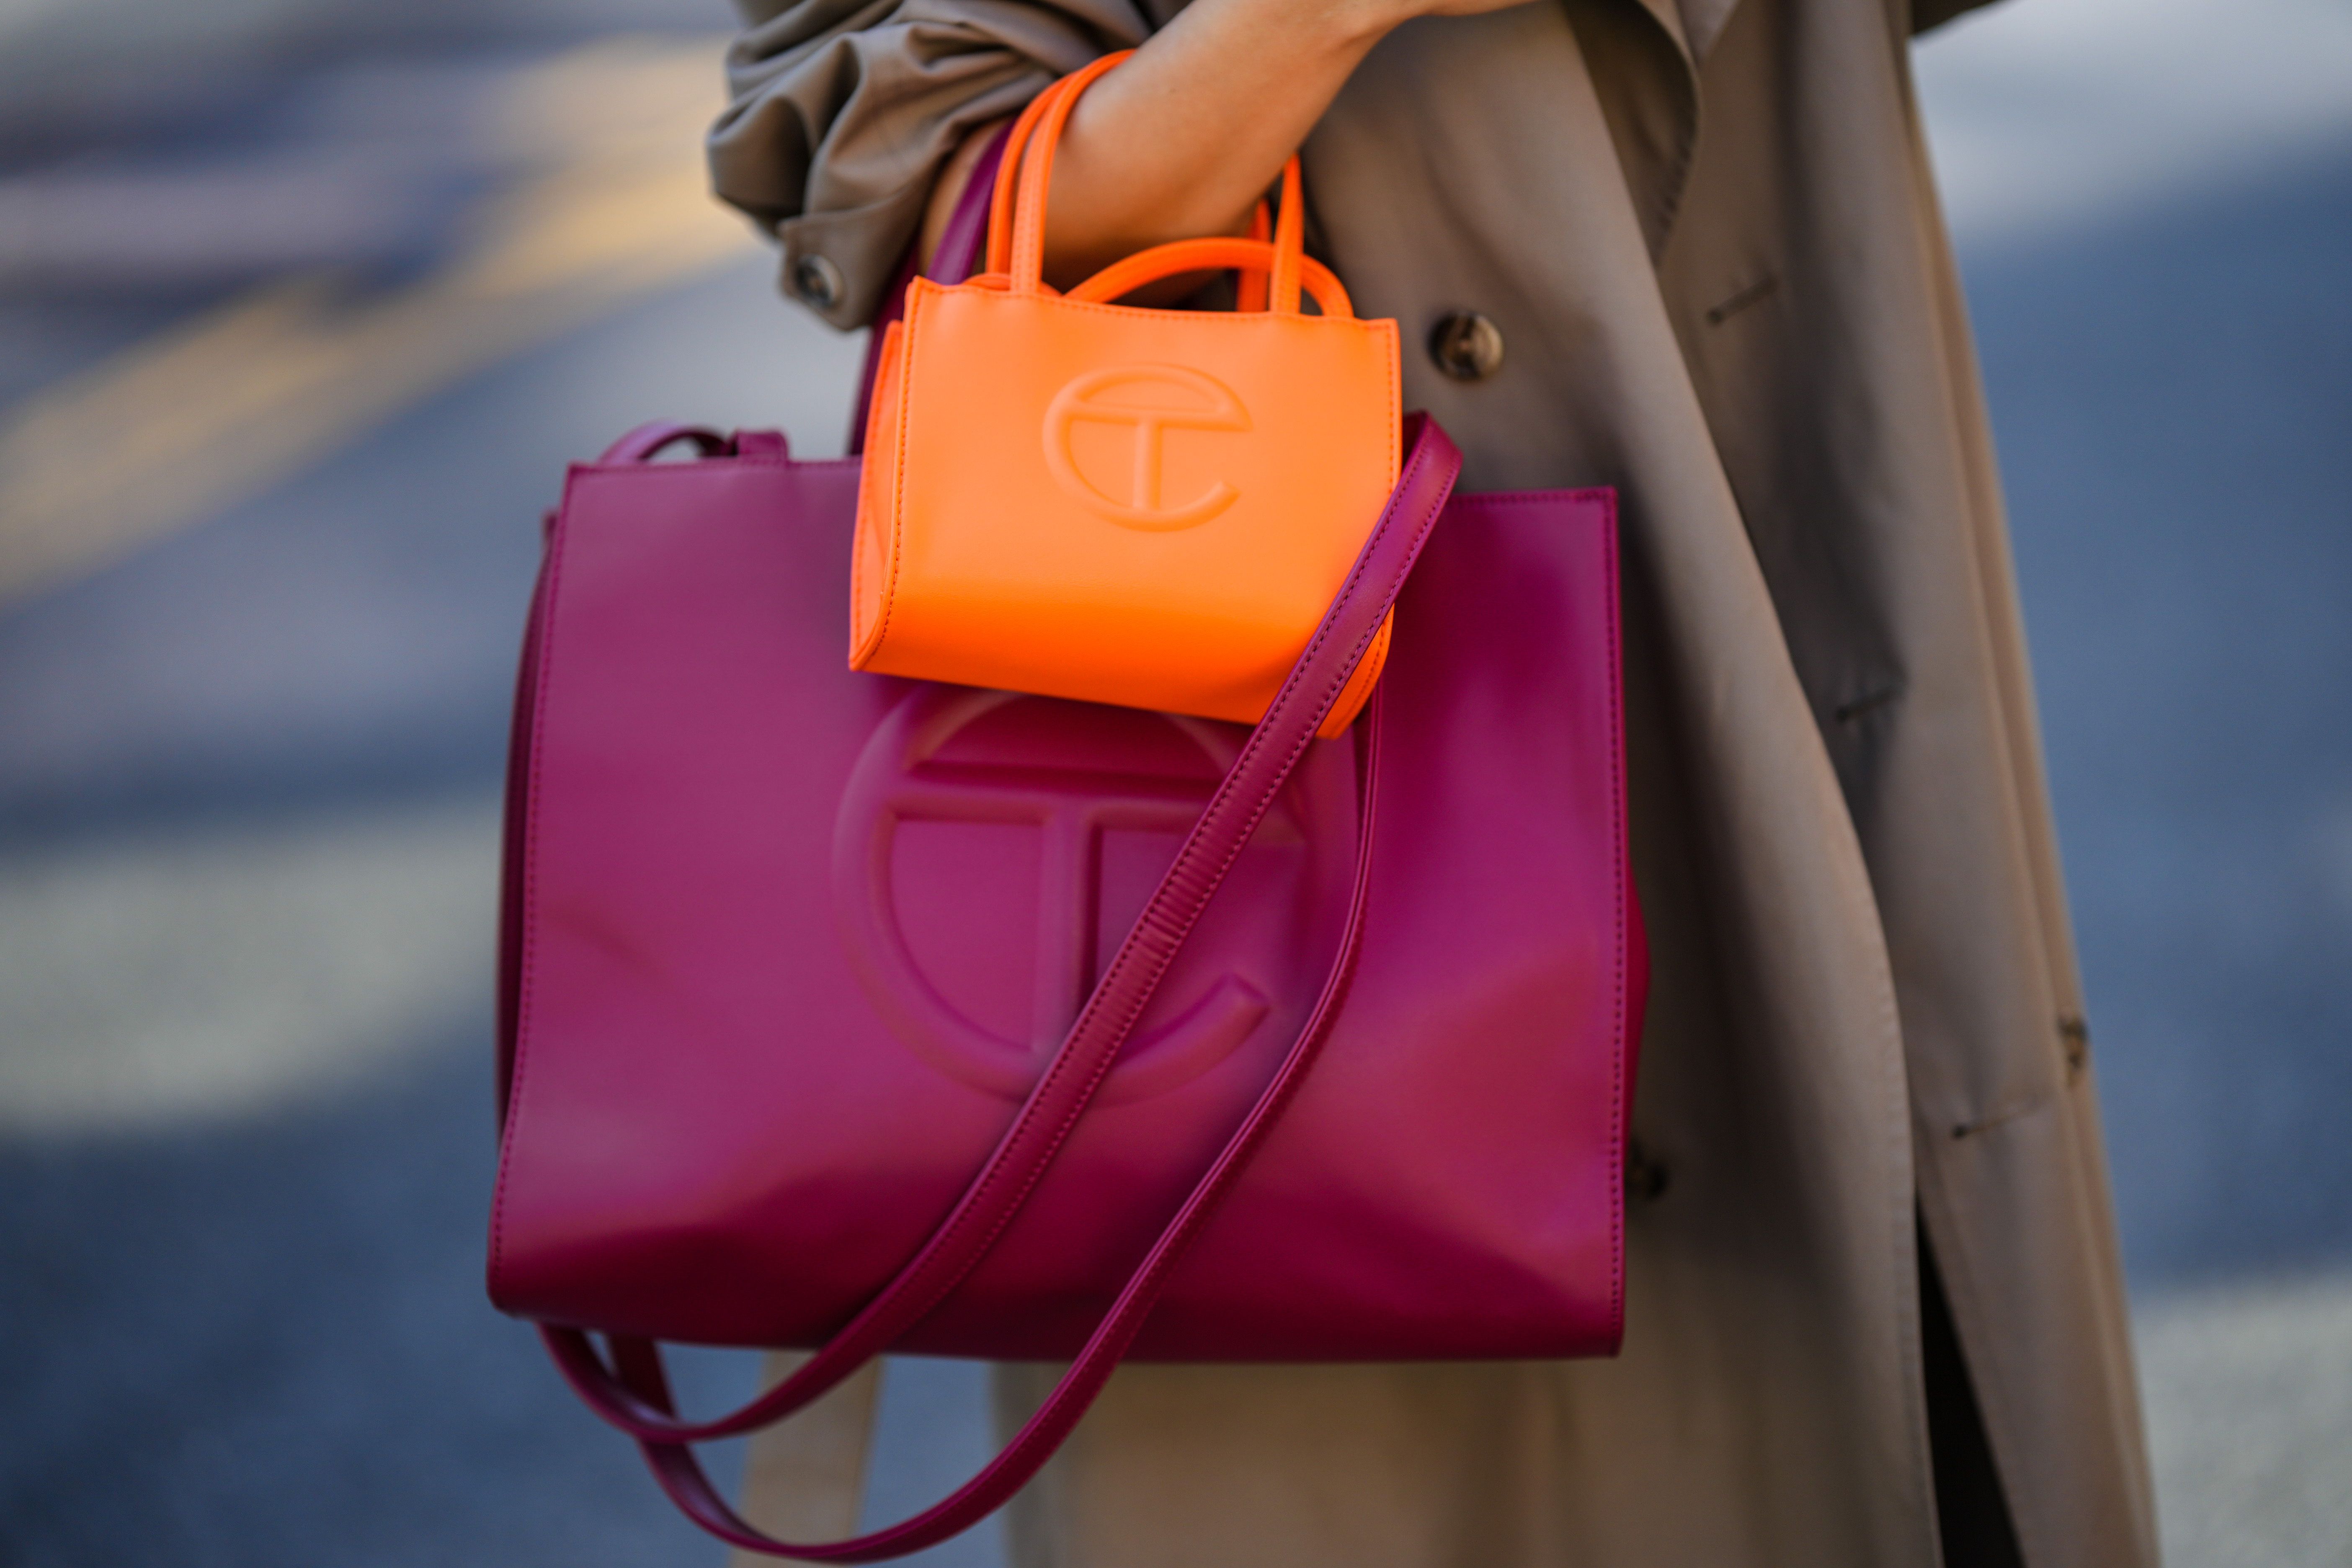 Handbag Shopping Bag Fashion High Quality Bag - China Bag and Lady's Bag  price